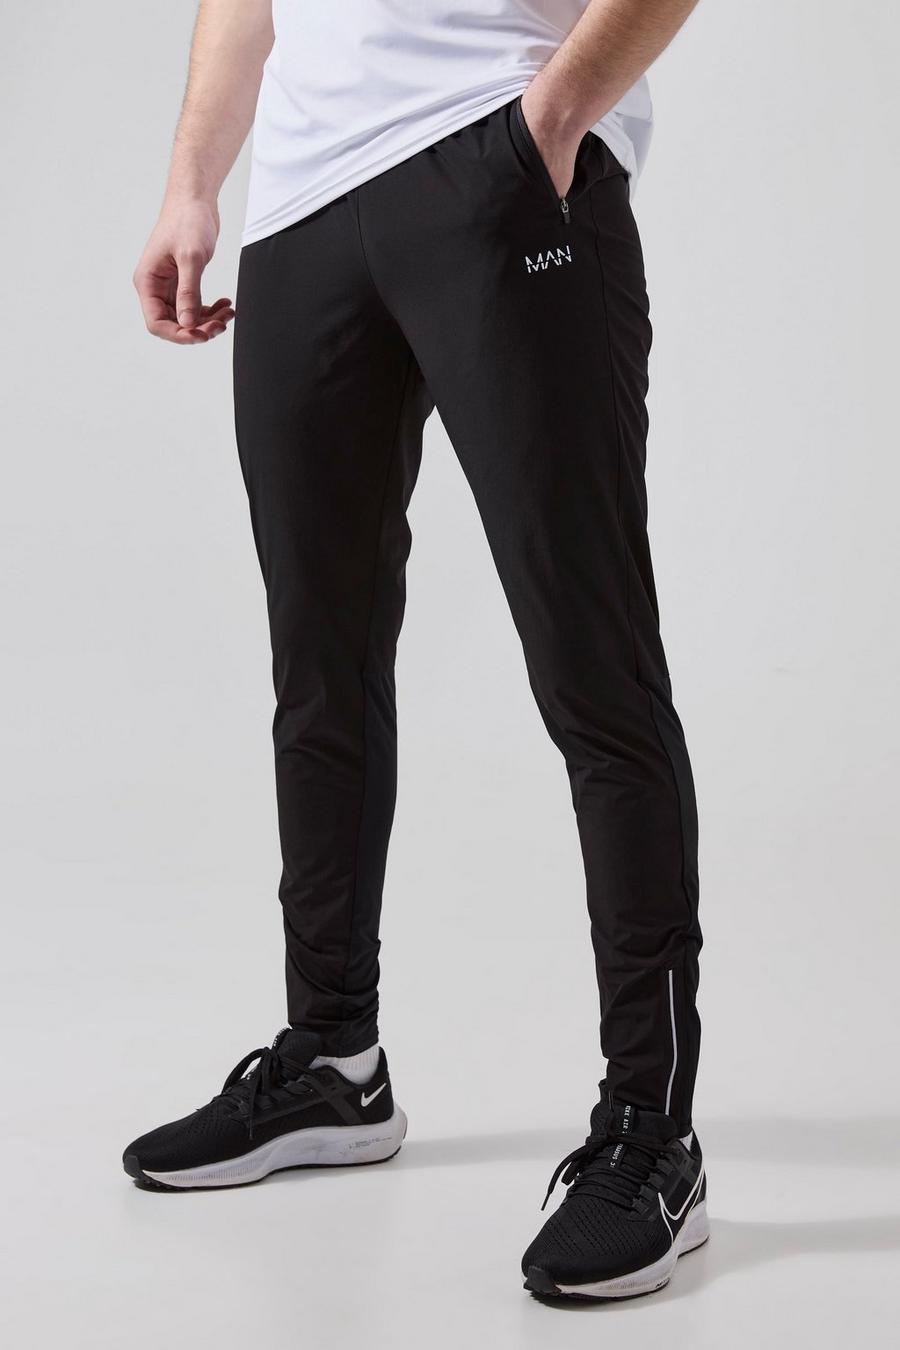 Pantaloni tuta leggeri Tall Man Active Gym - set di 2 paia, Black image number 1